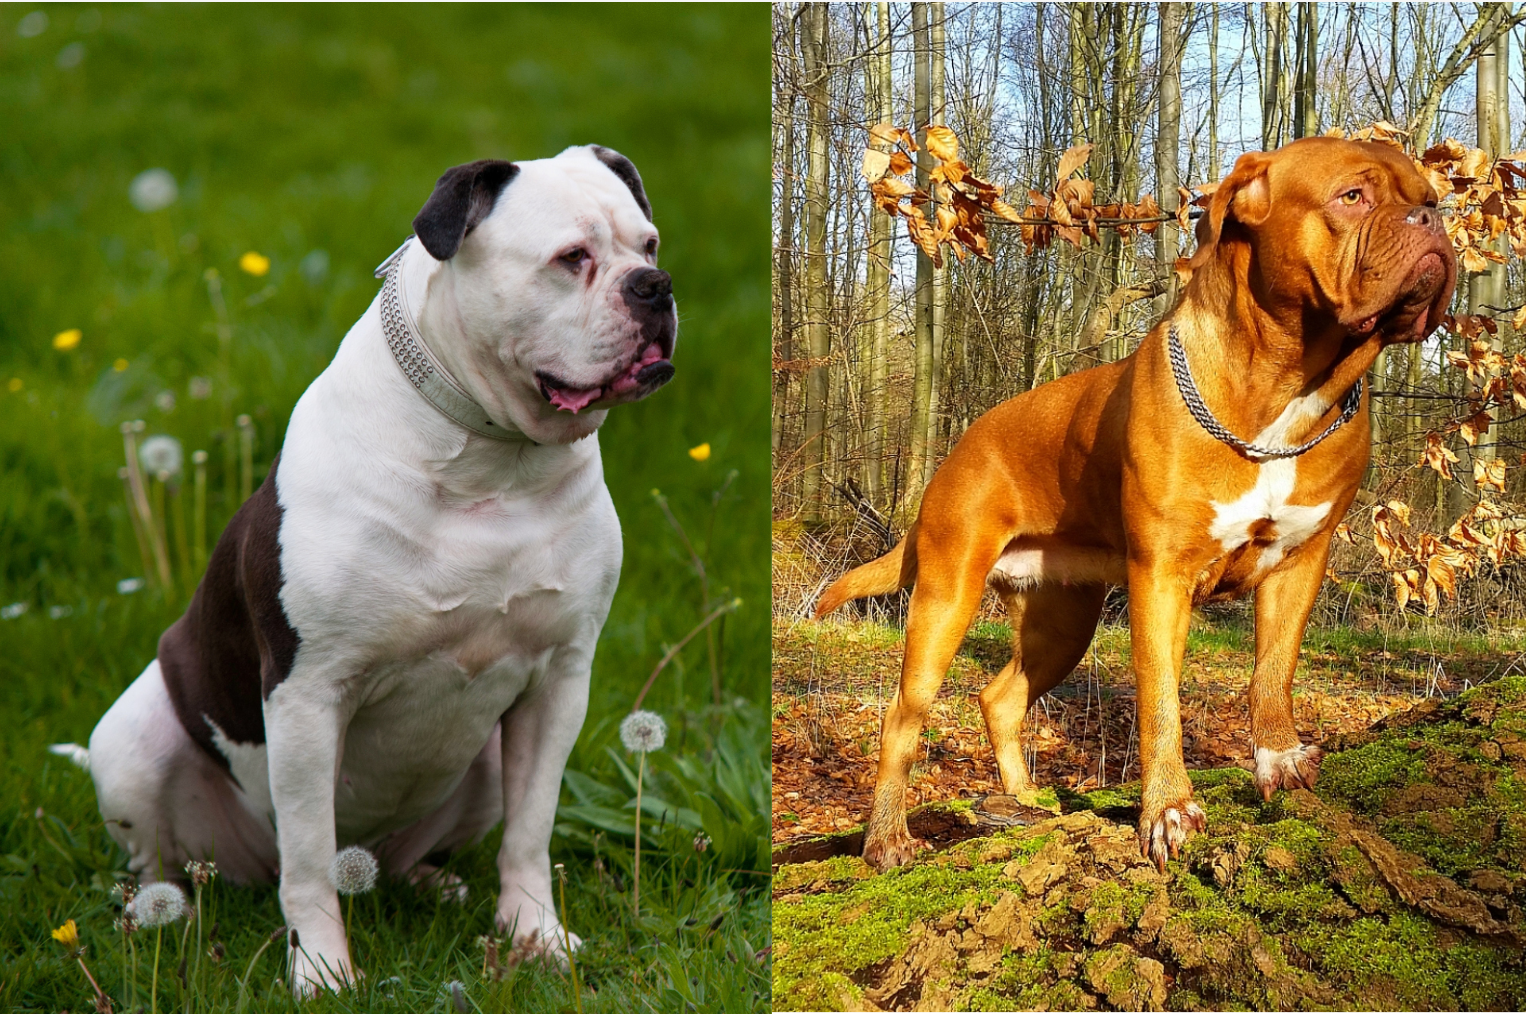 american bulldog vs english bulldog vs french bulldog